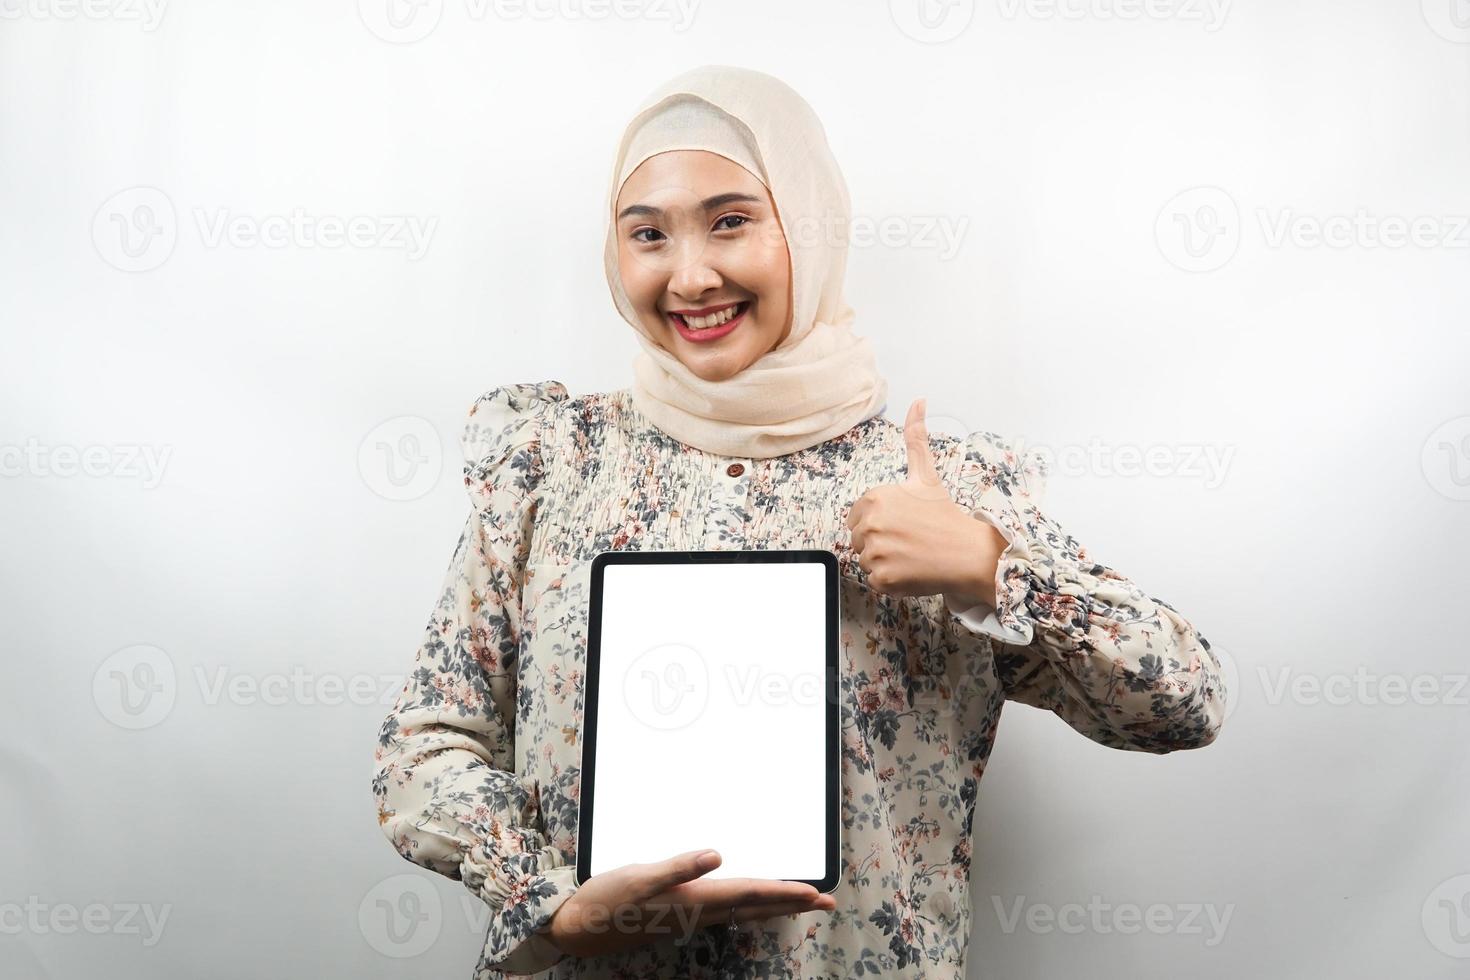 belle jeune femme musulmane asiatique souriante, excitée et joyeuse tenant une tablette avec un écran blanc ou vide, faisant la promotion de l'application, faisant la promotion du produit, présentant quelque chose, isolée sur fond blanc photo